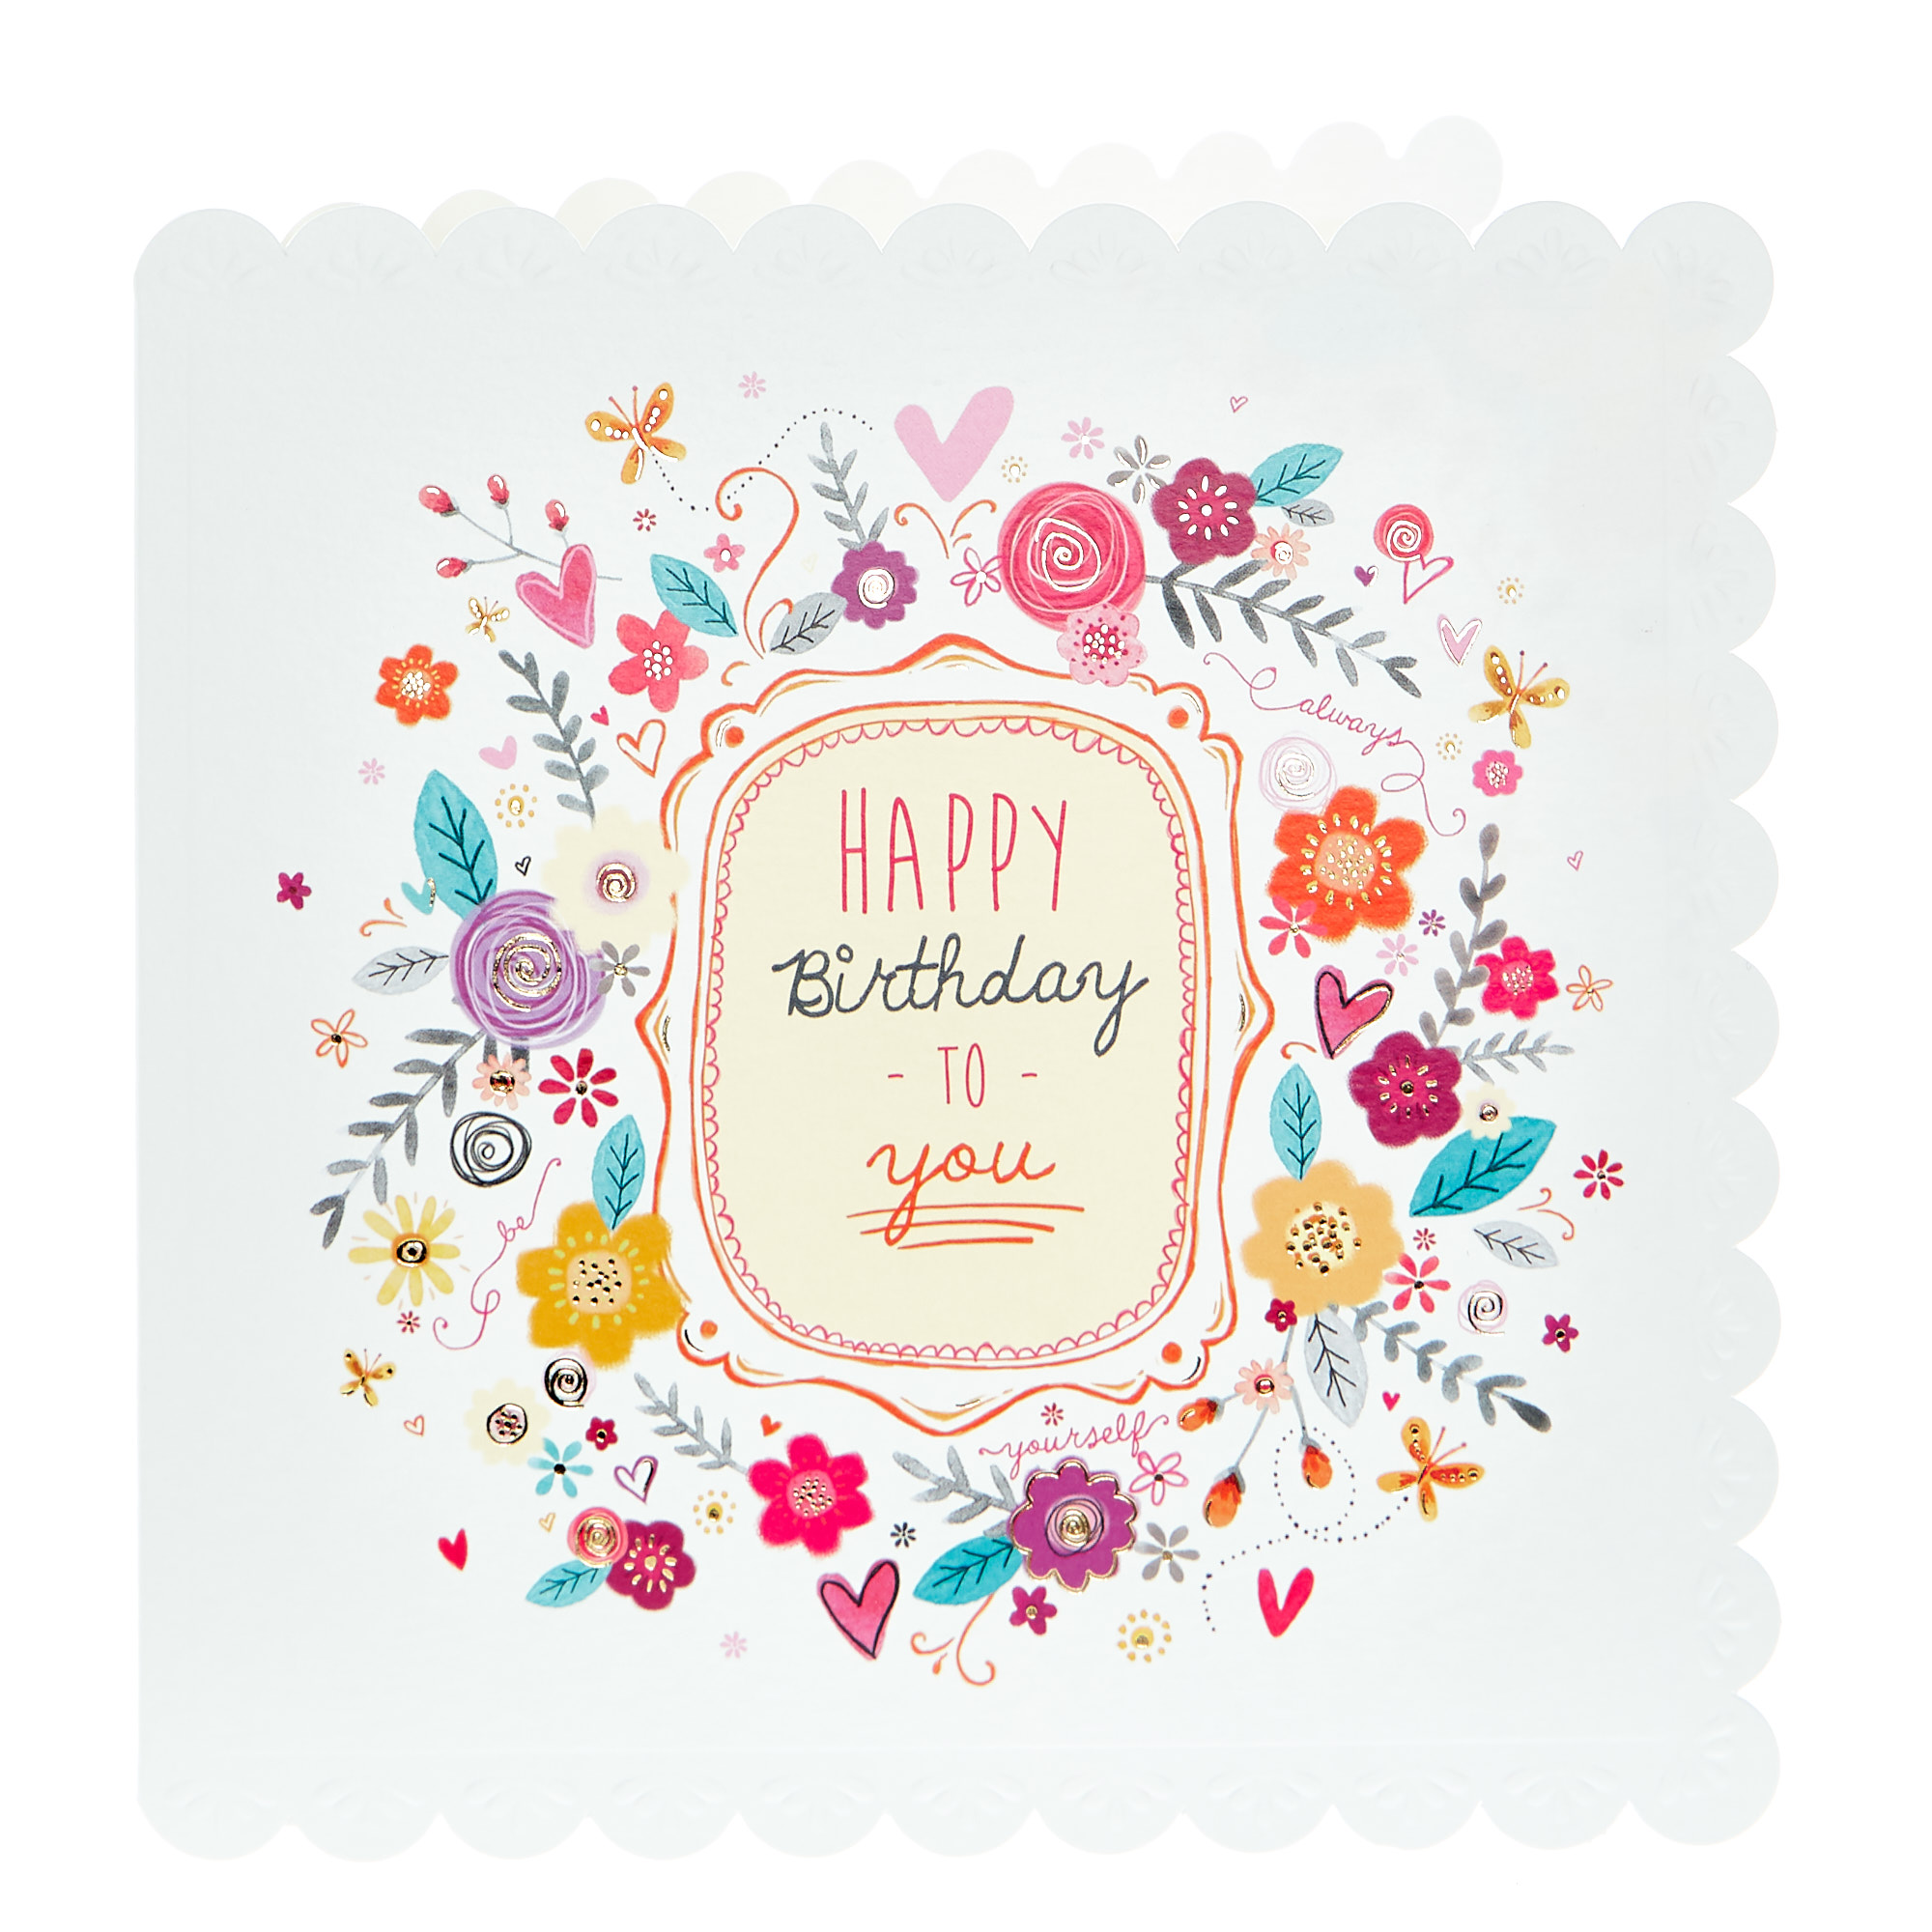 Birthday Card - Pretty Floral Border